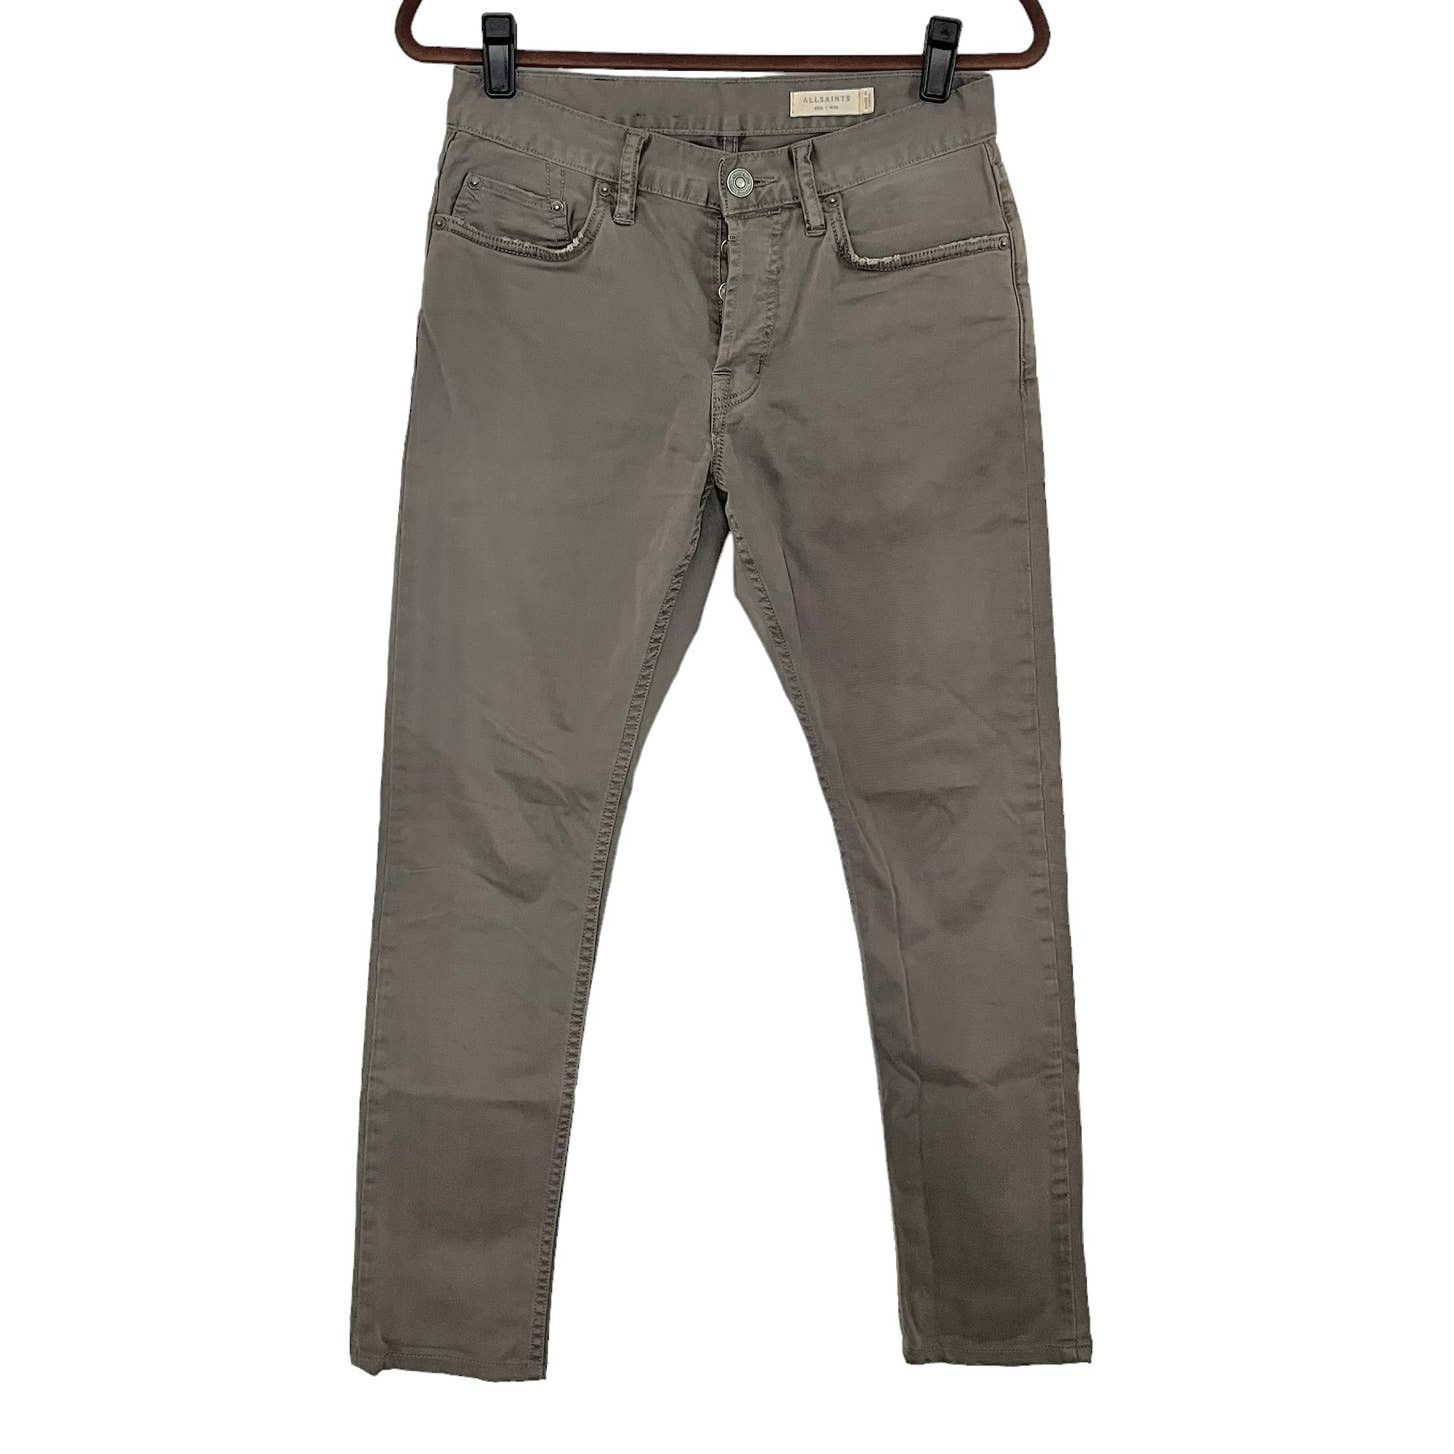 Allsaints AllSaints Size 28 Slate Gray Cotton Jeans Button Fly Size US 28 / EU 44 - 1 Preview